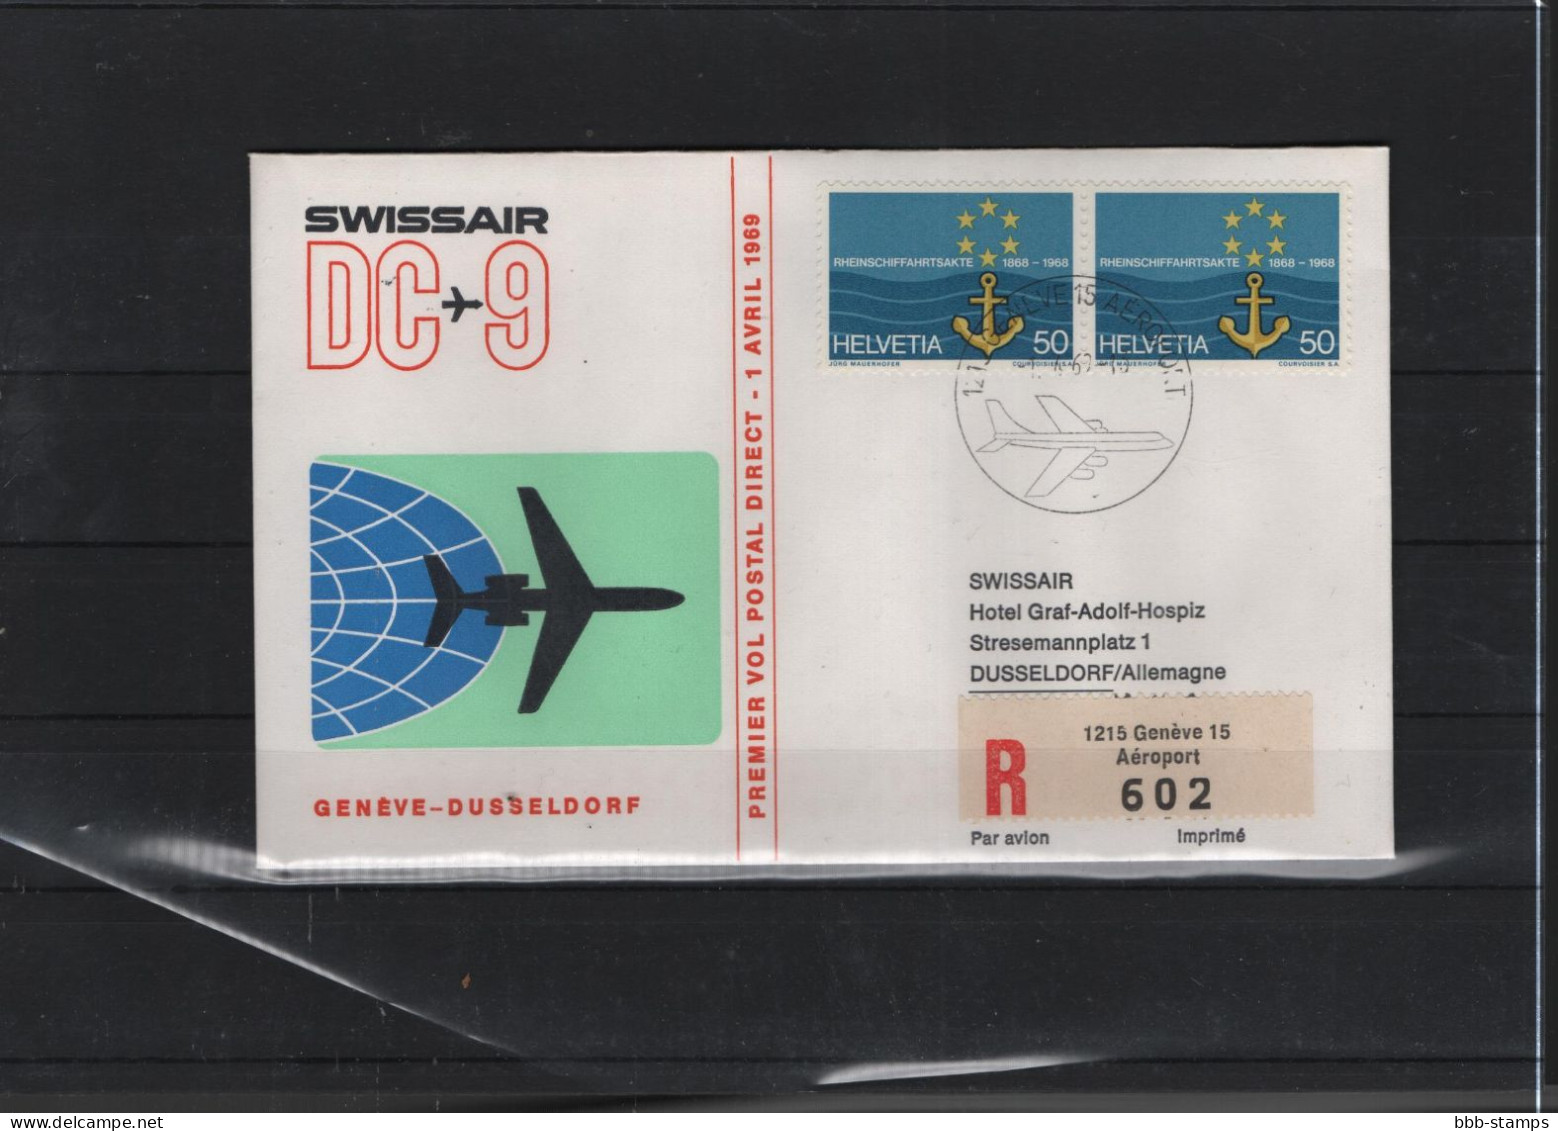 Schweiz Air Mail Swissair  FFC  31.4.1969 Genf - Düsseldorf - First Flight Covers